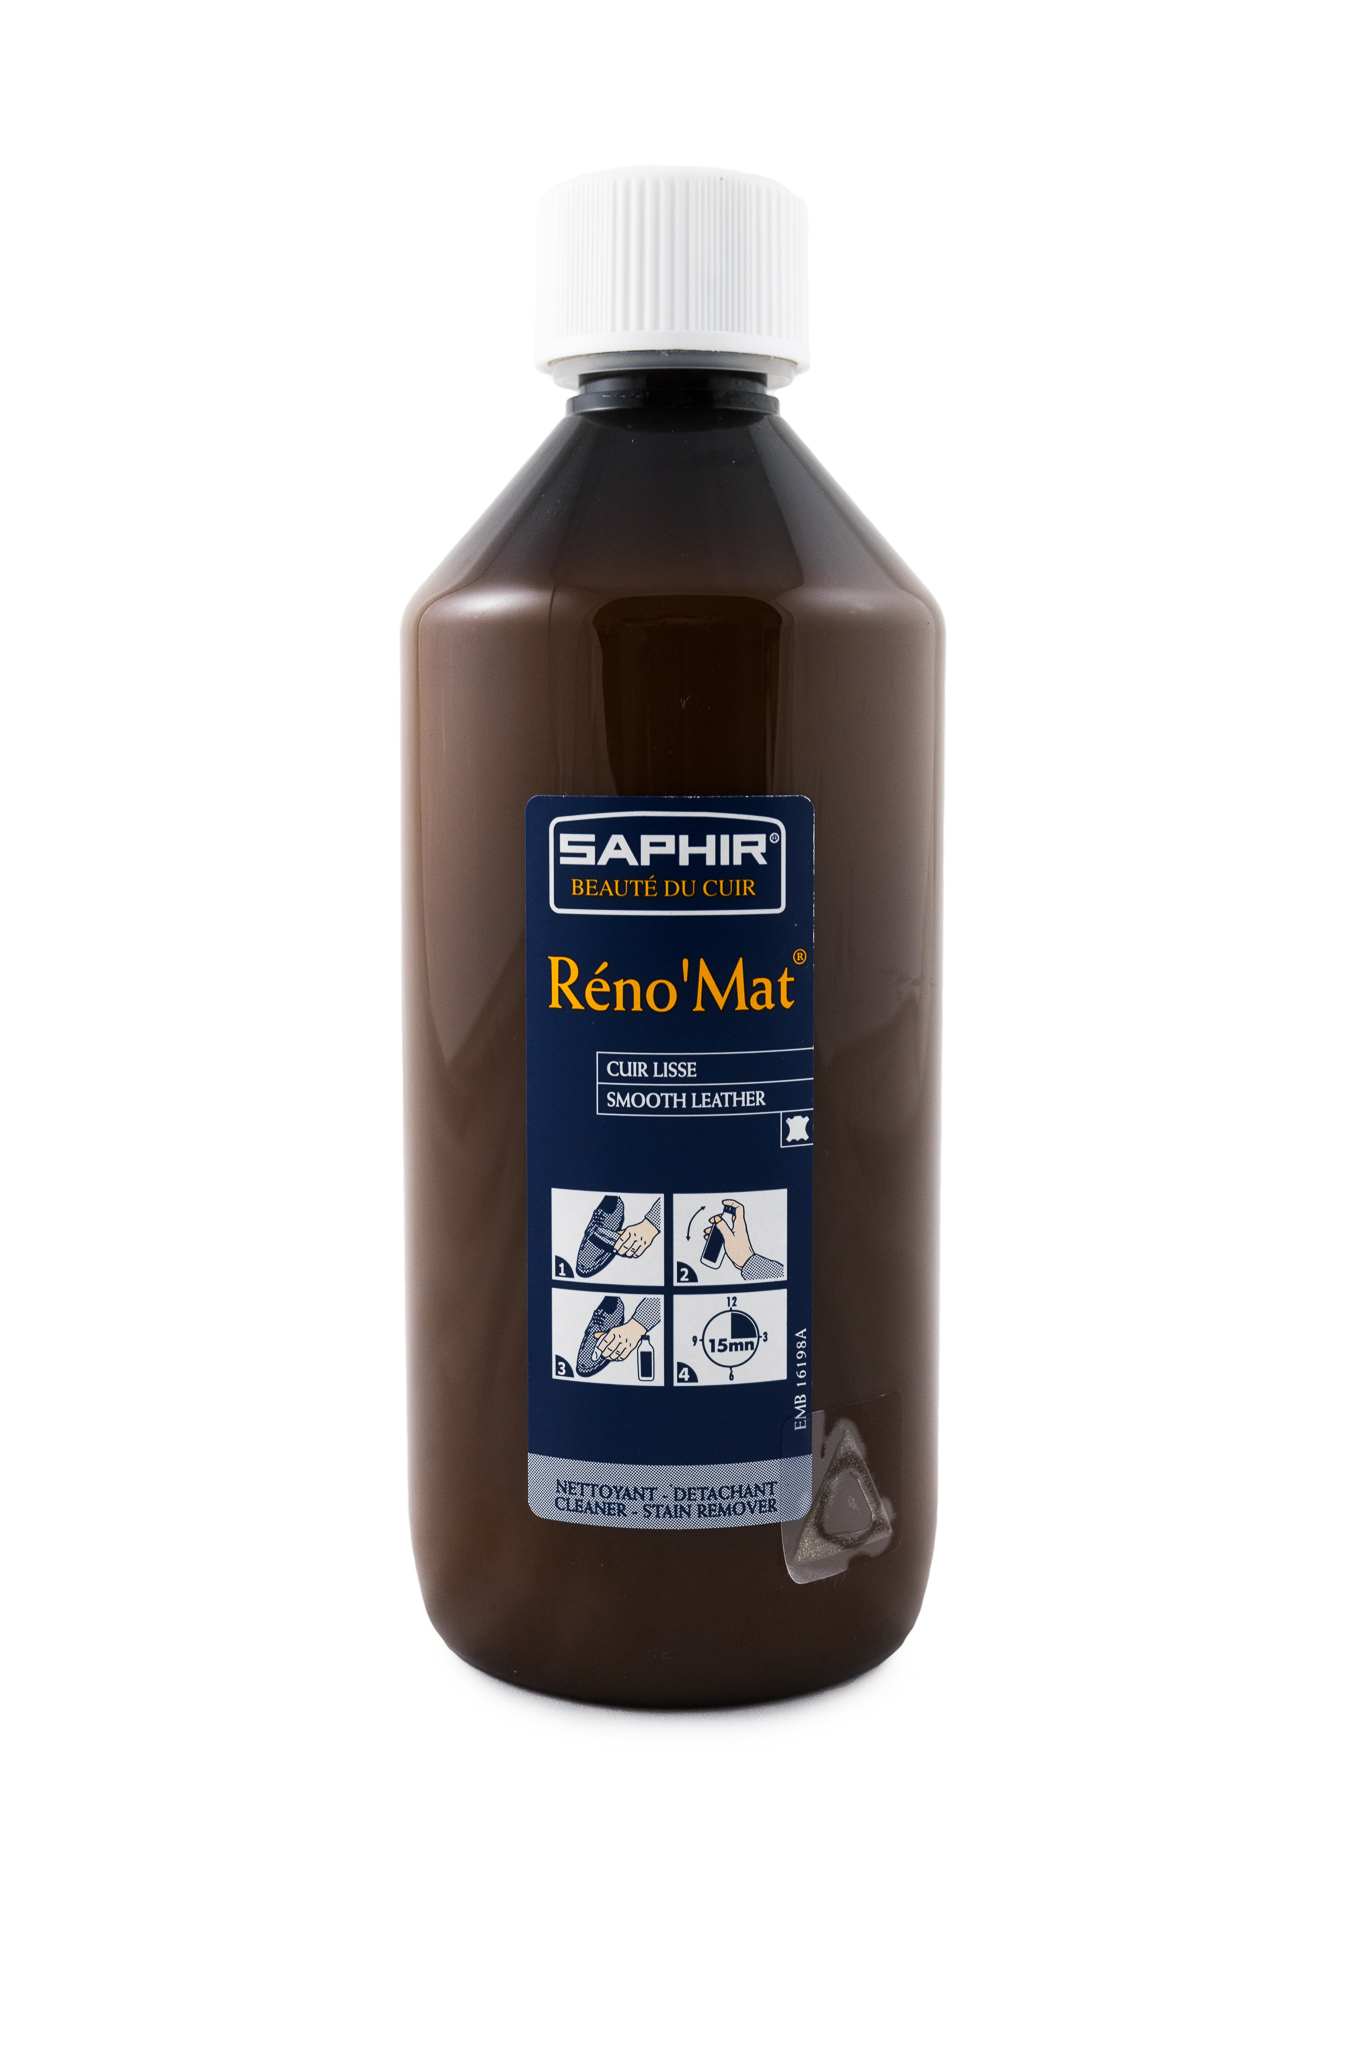 Reno mat. Saphir очиститель Reno’mat. Saphir Reno mat очистка. Средство для кожи сапфир. Saphir кондиционер для кожи.